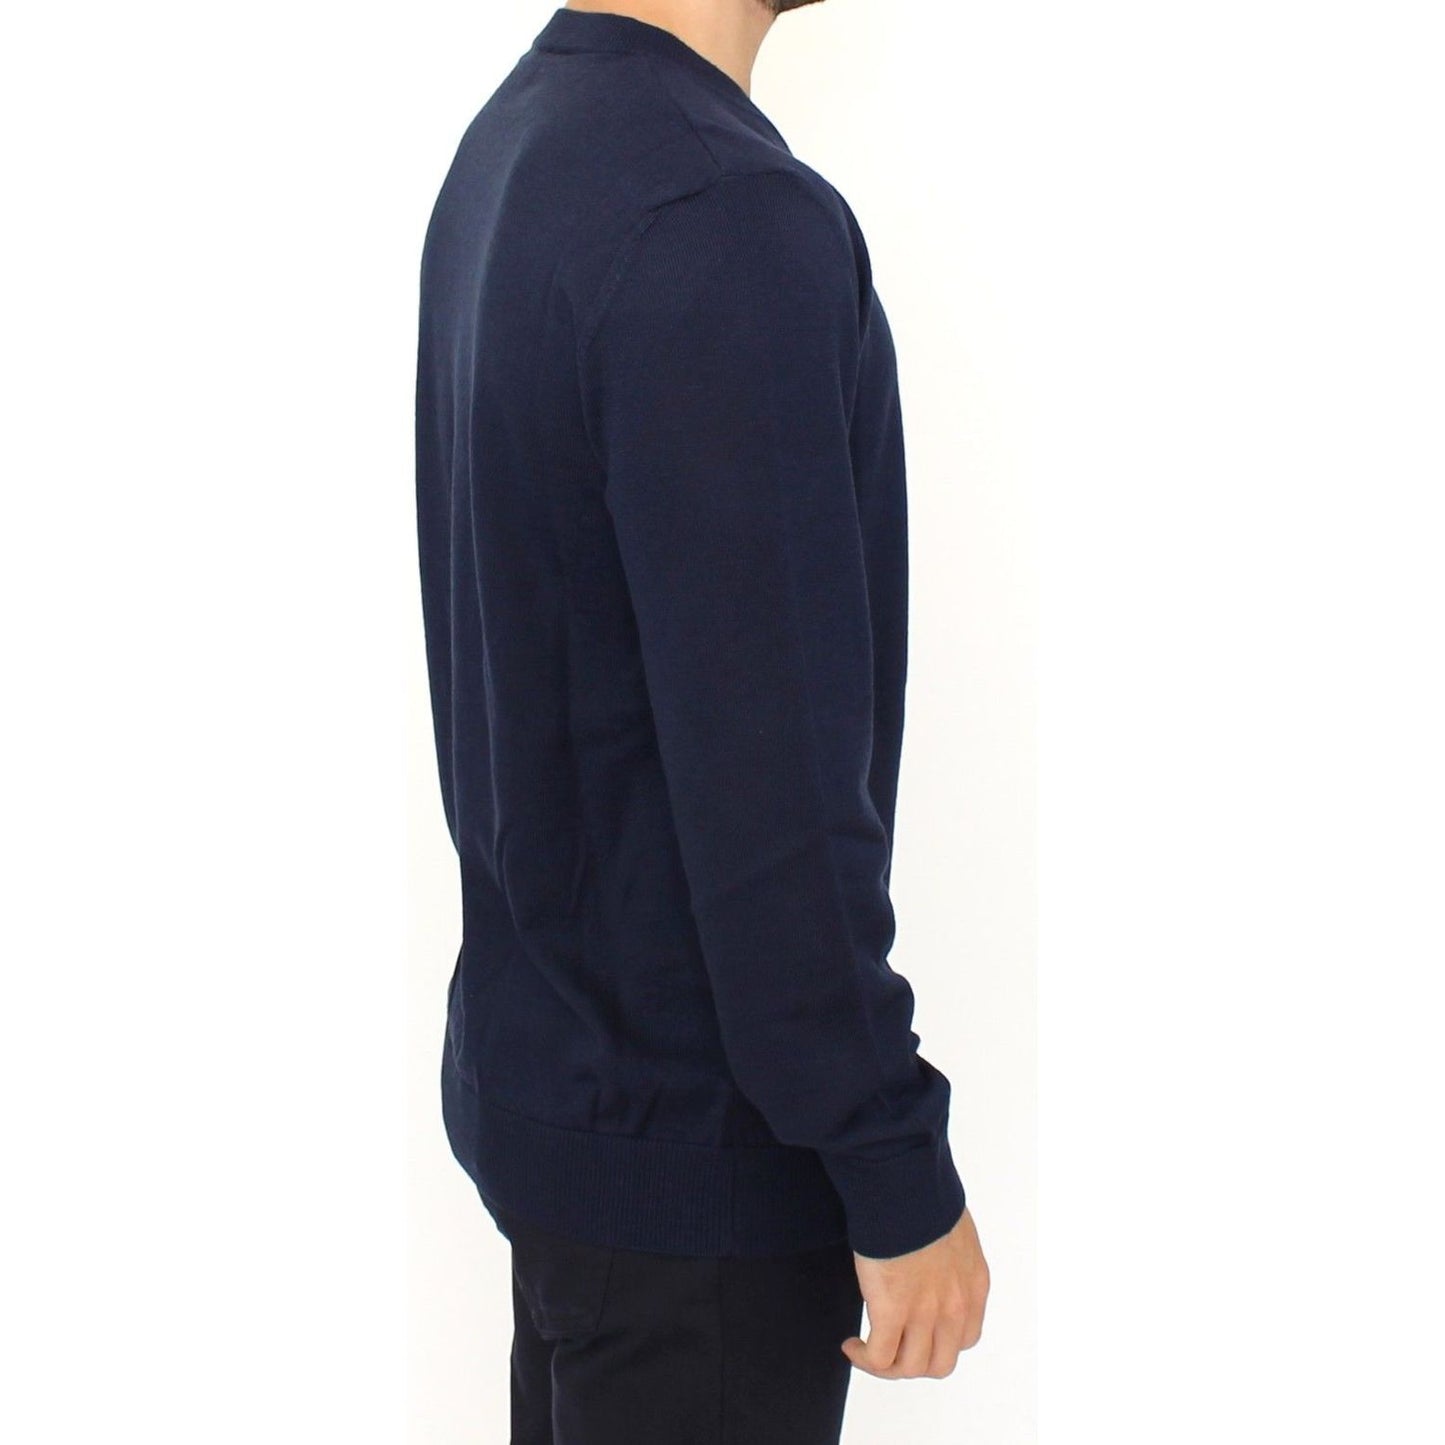 Ermanno Scervino | Blue Wool Blend V-neck Pullover Sweater | McRichard Designer Brands